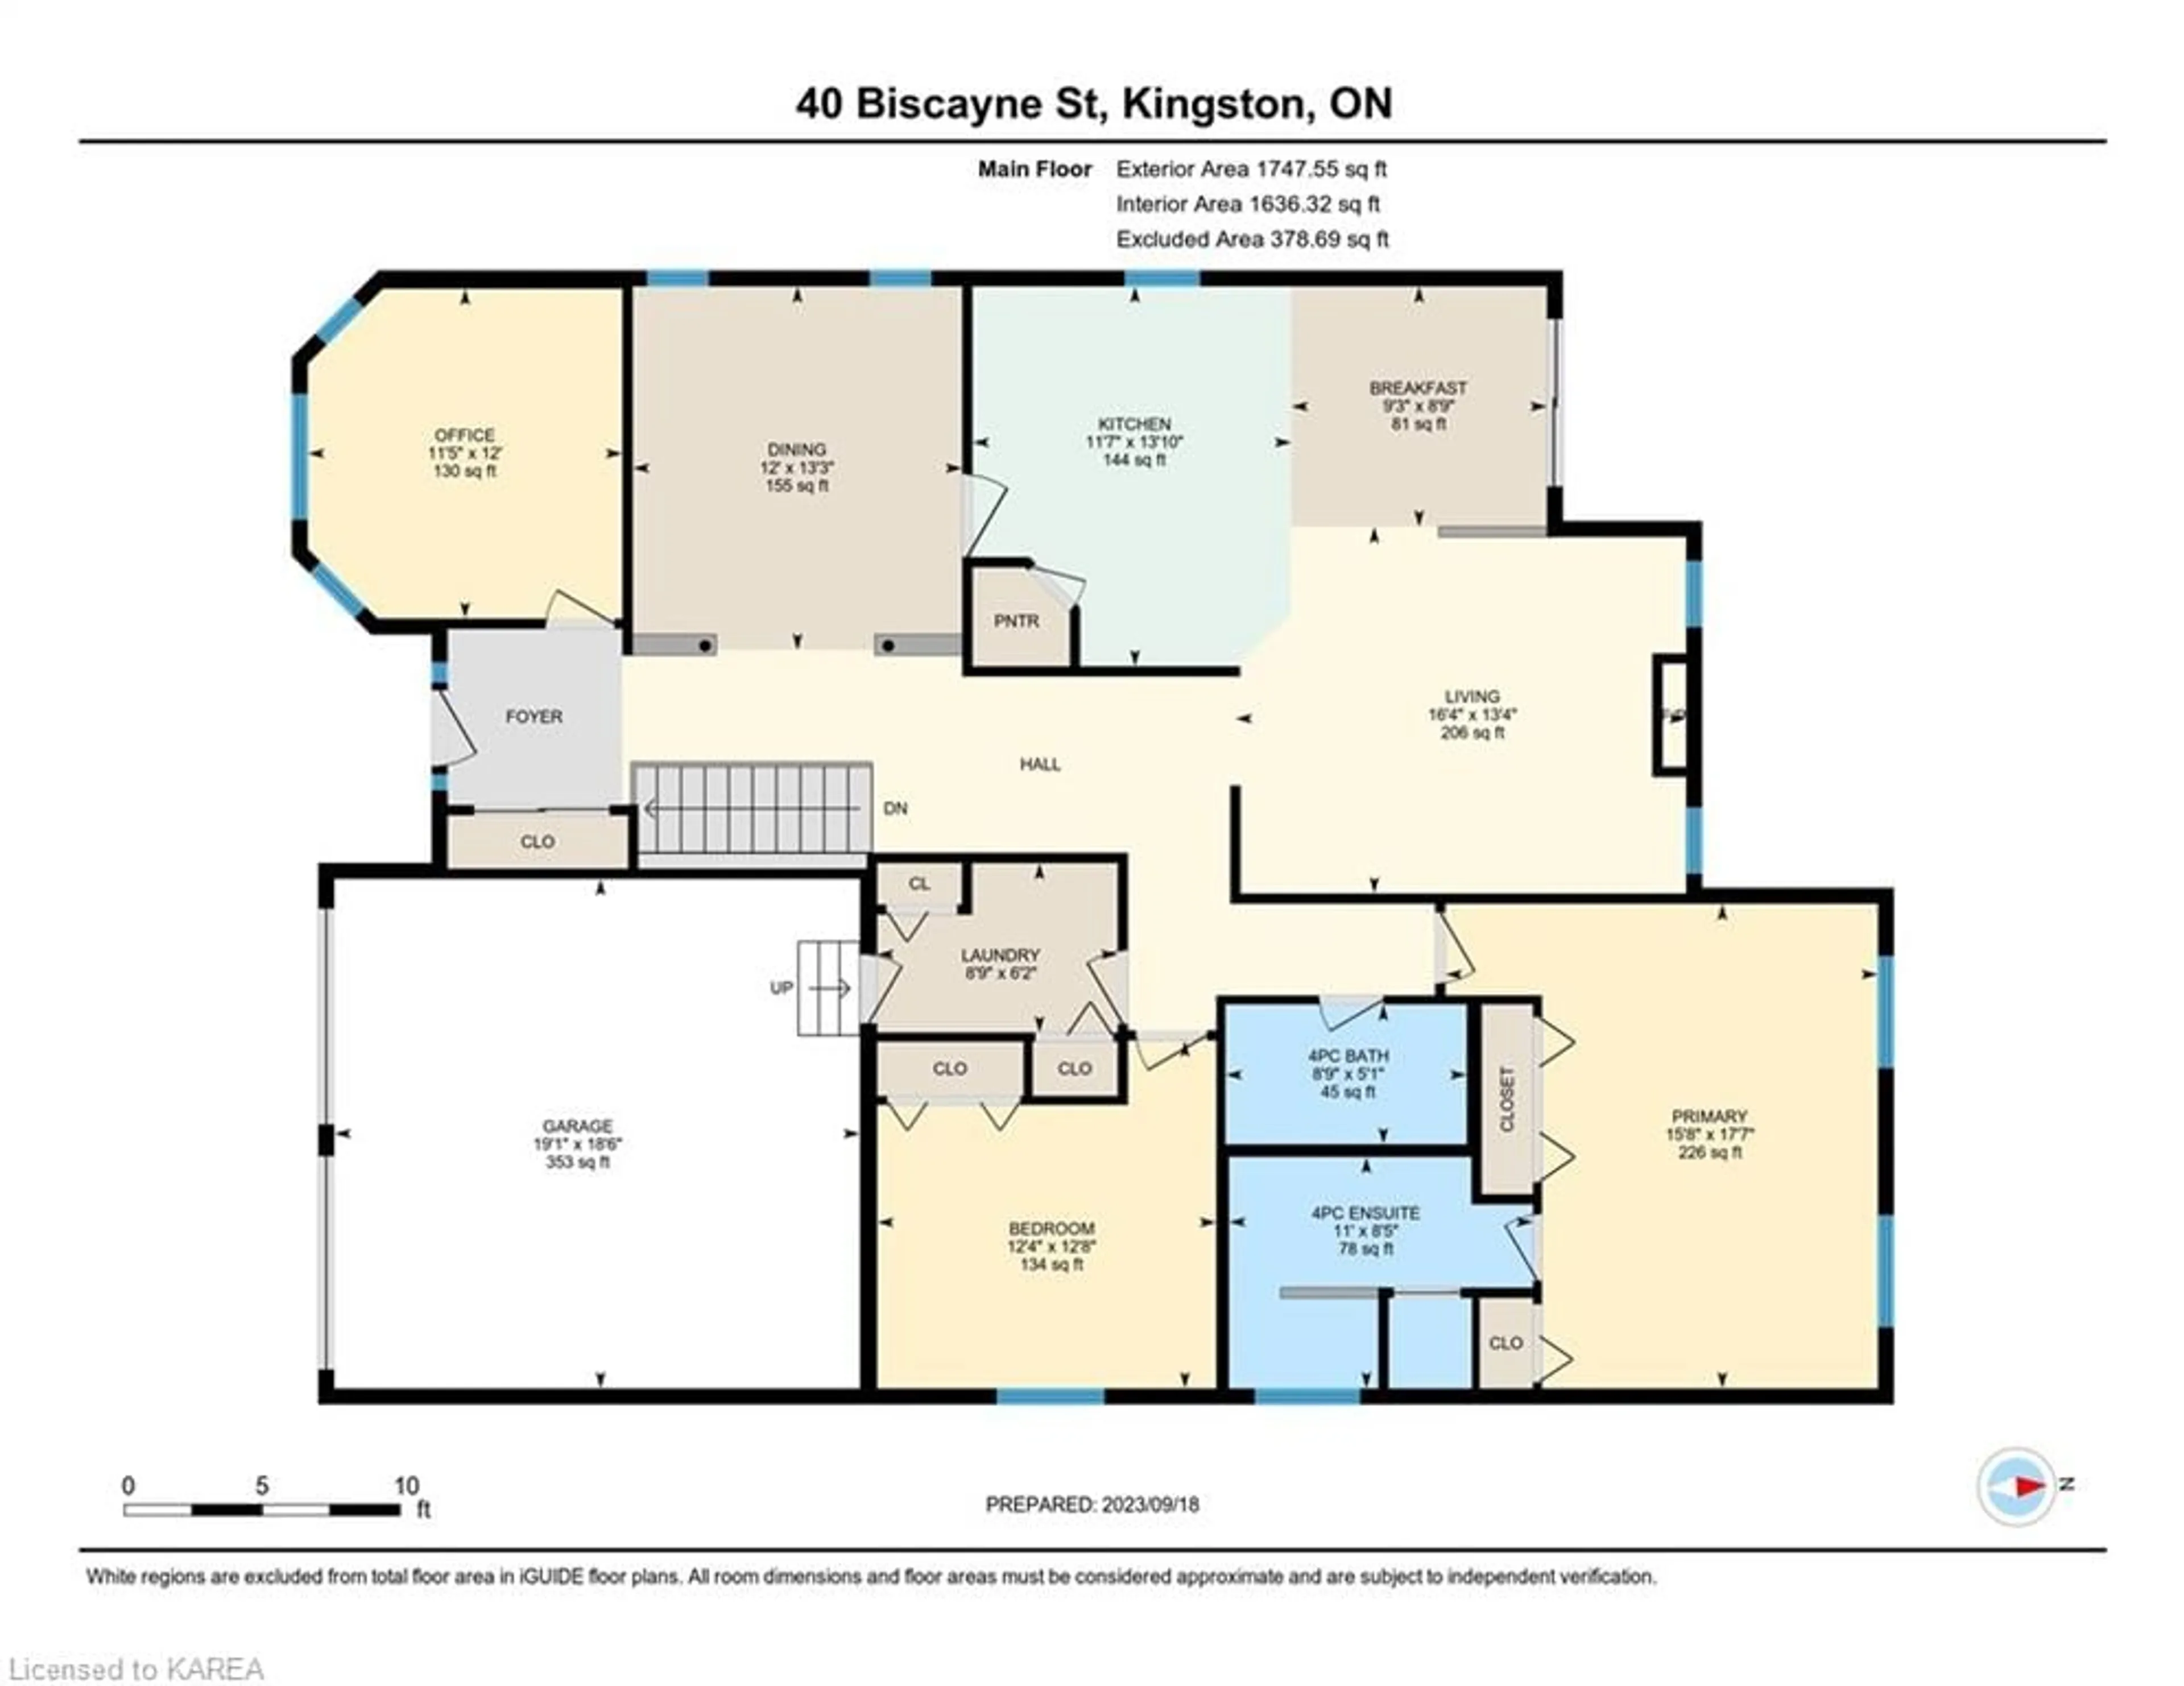 Floor plan for 40 Biscayne St, Kingston Ontario K7K 7J9